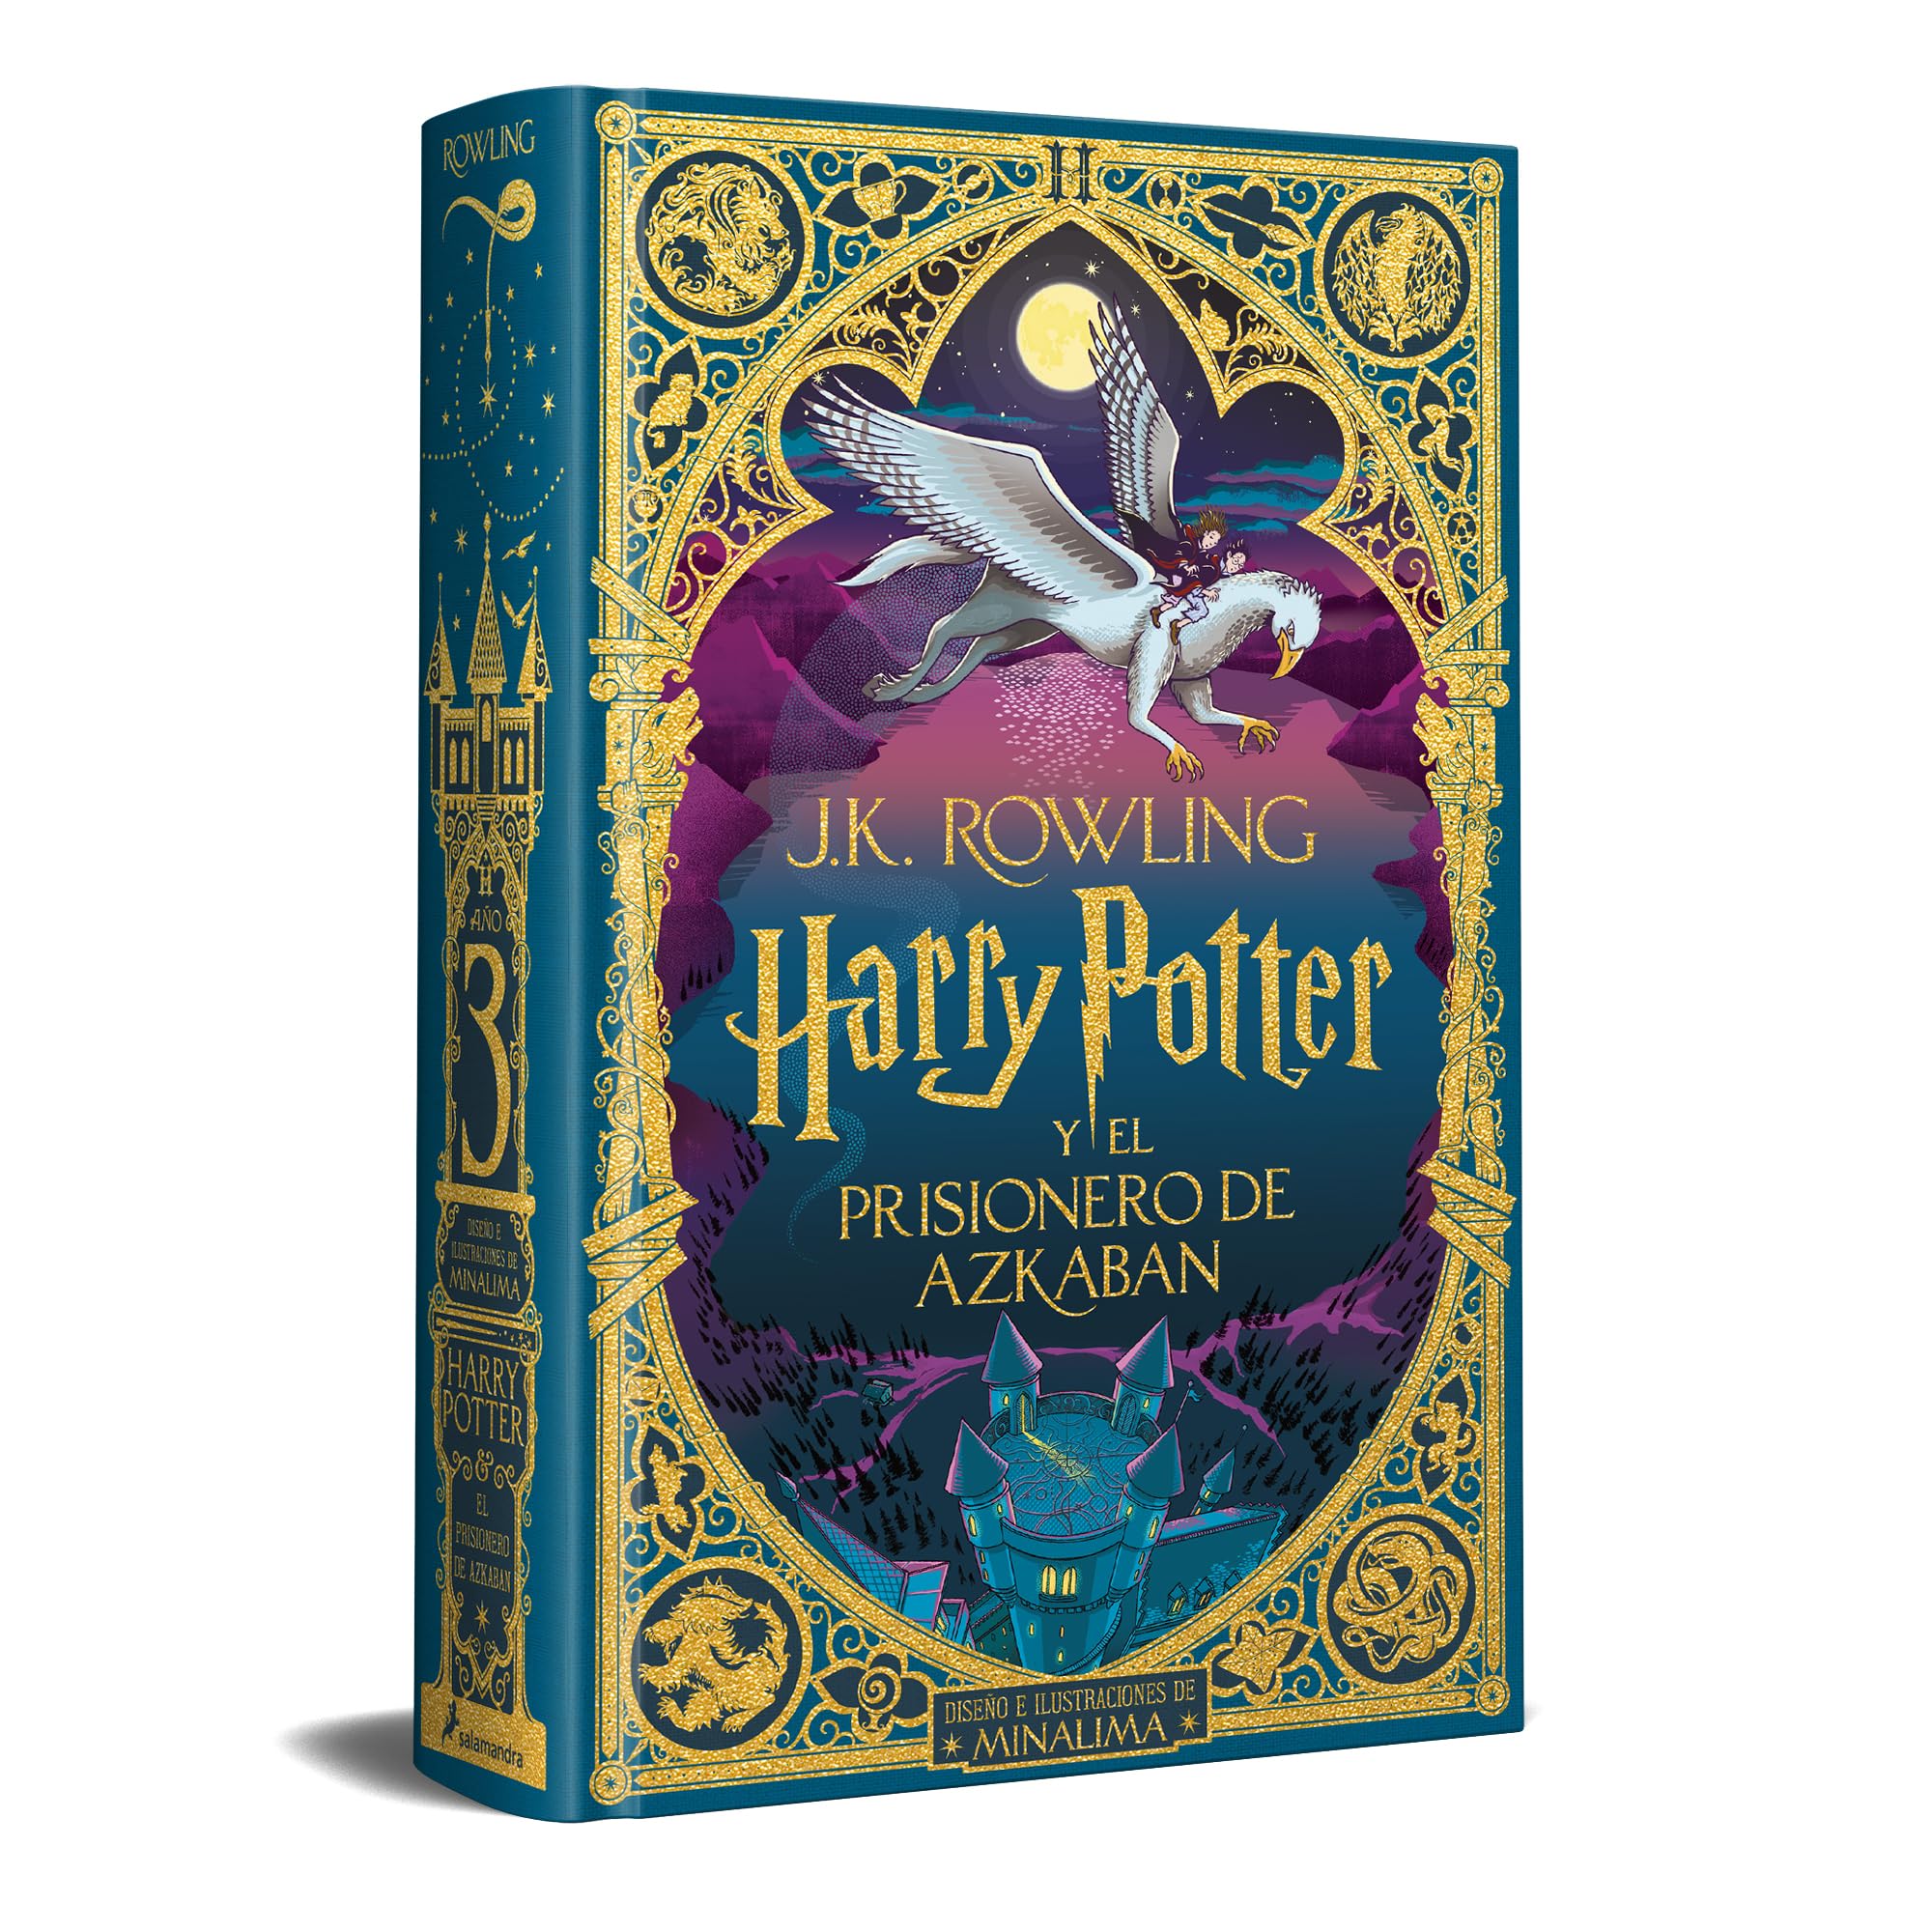 Harry Potter y el prisionero de Azkaban (Ed. Minalima) (Spanish Edition)